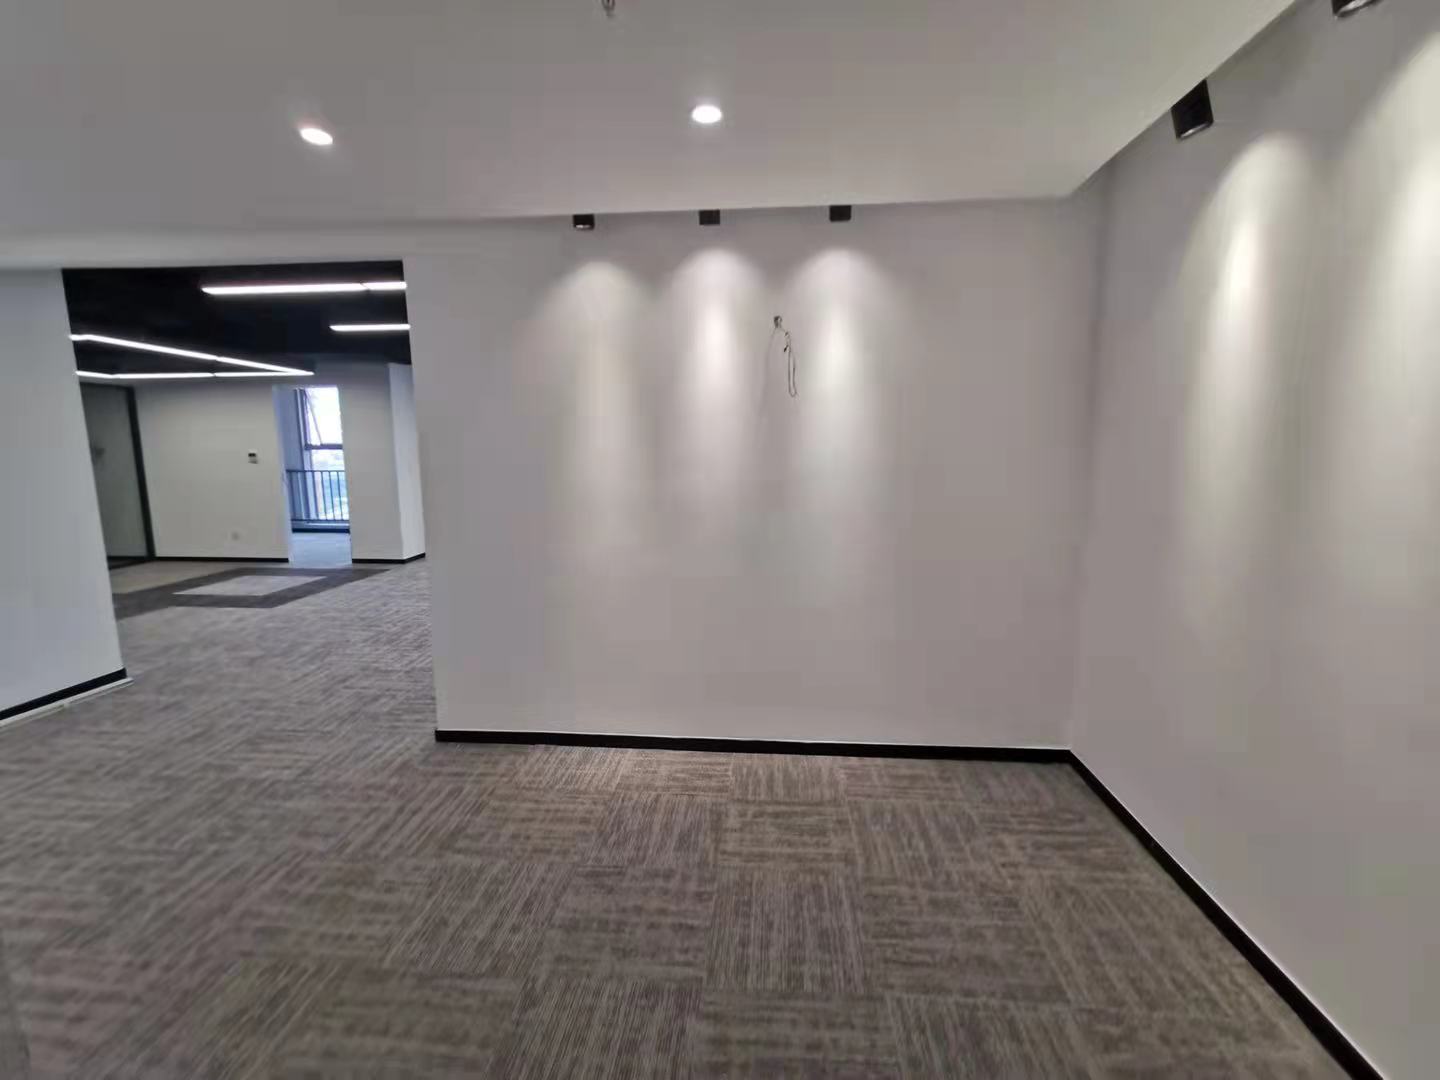 南京西路园区 映像288创意园 200平精装修 独立空调 办公室选址(图2)